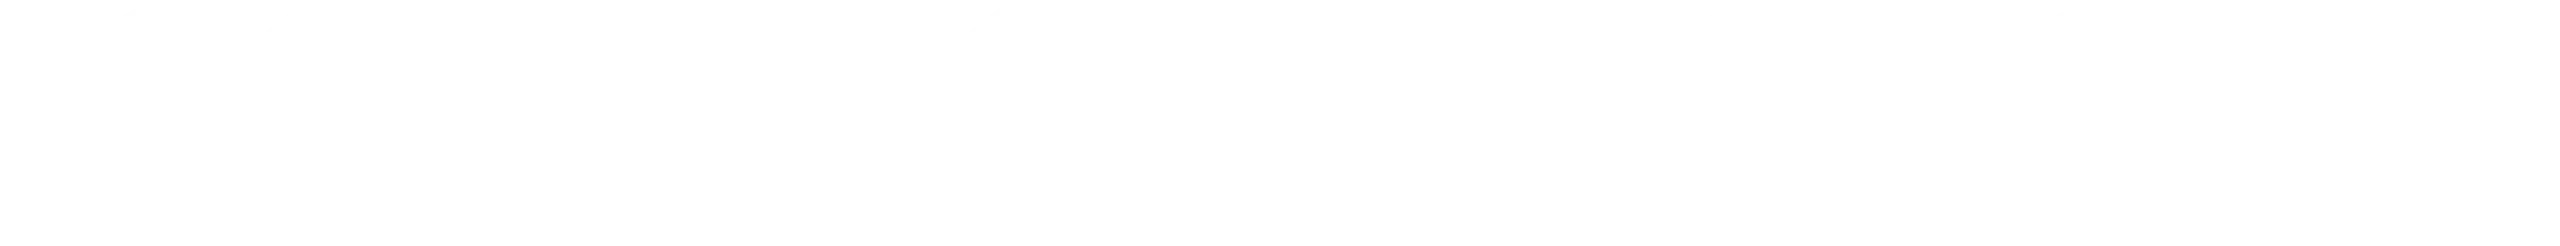 嘉義市管樂團-logo-英文-白色